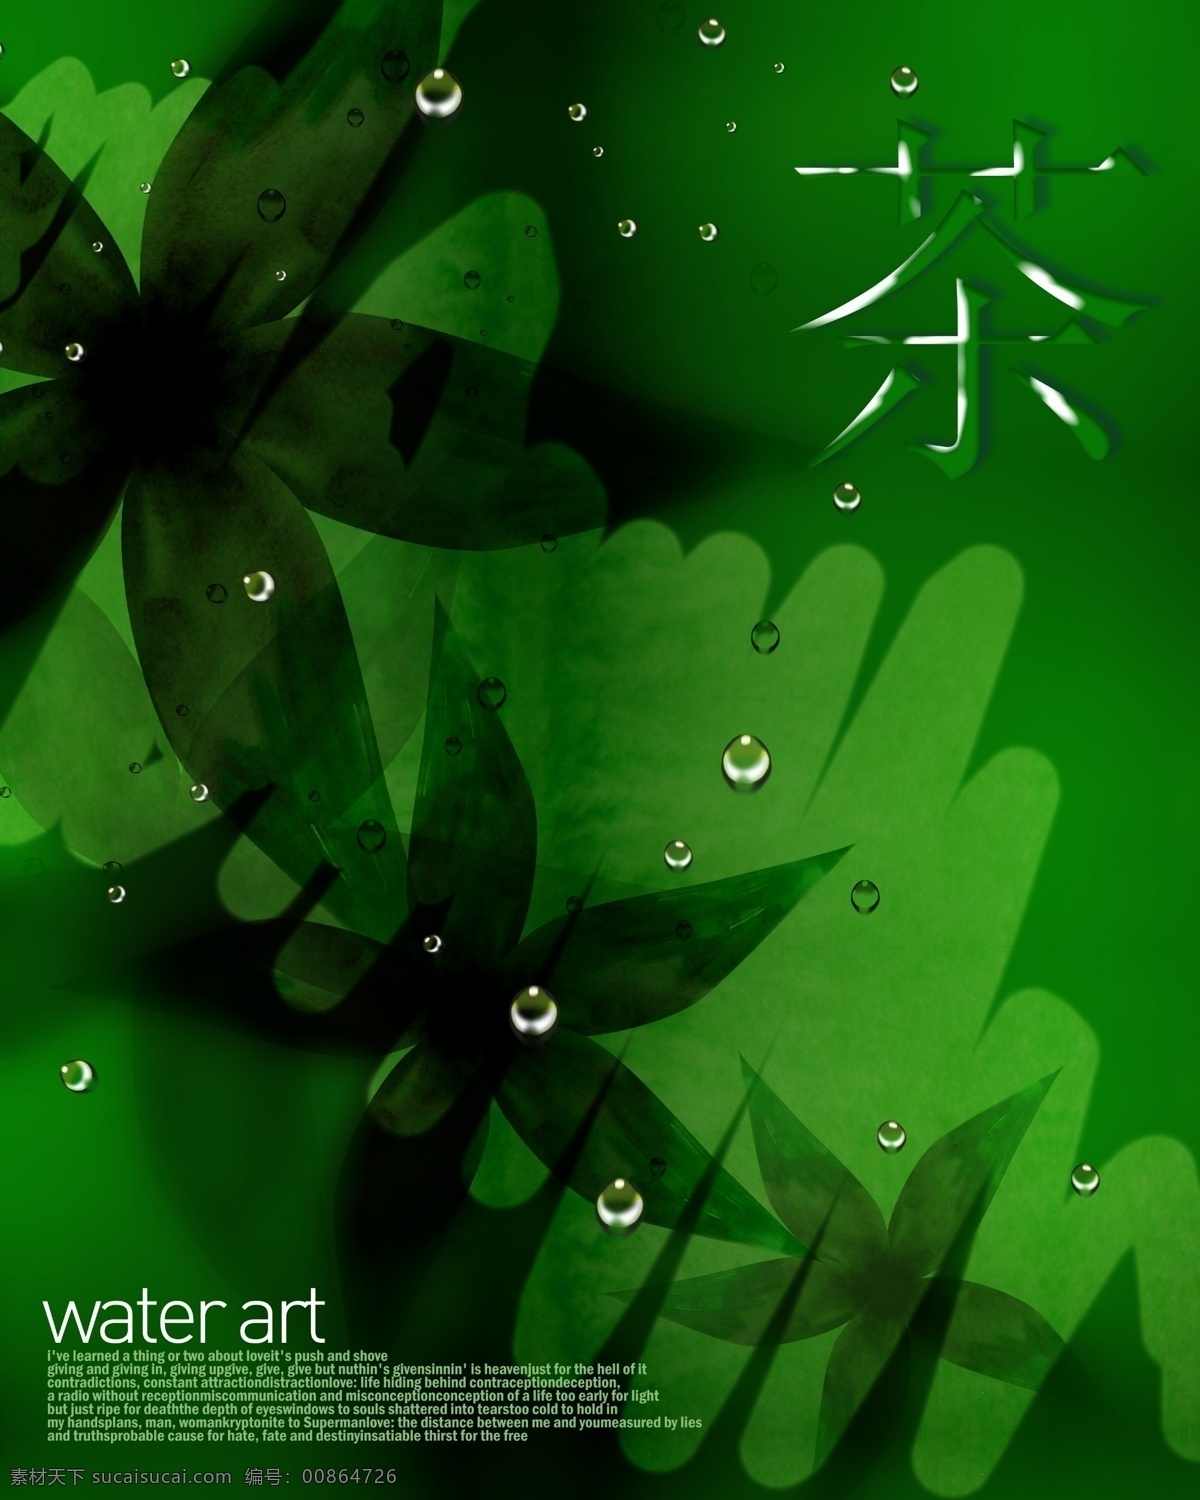 水背景素材 水艺术 水 水素材 背景素材 水元素 海报背景 背景素材大集 绿色